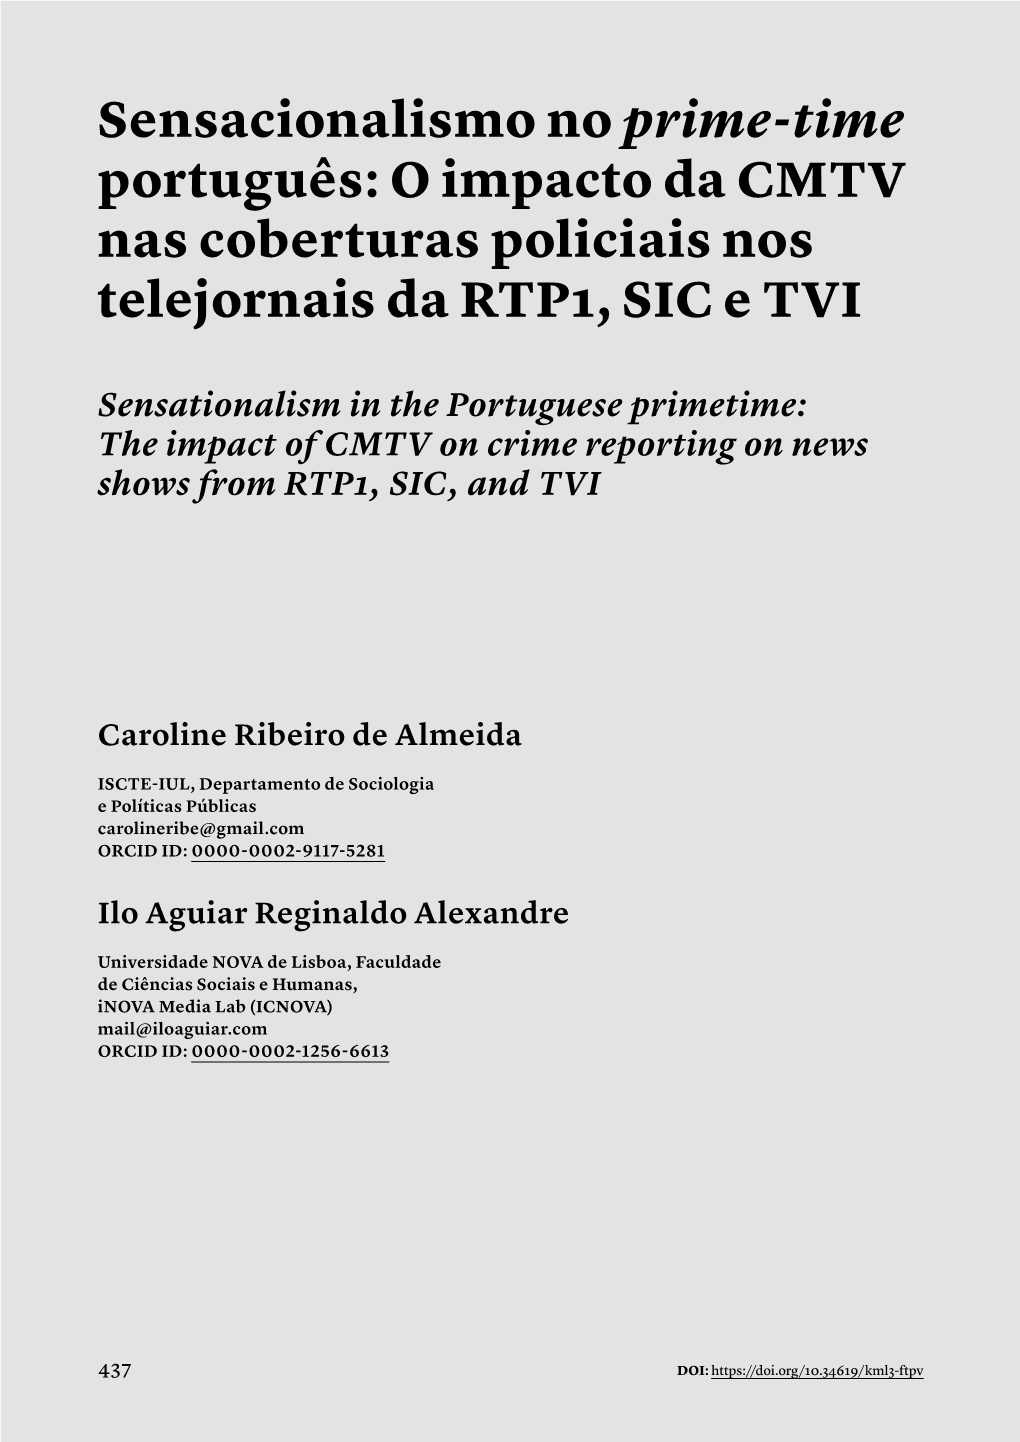 Sensacionalismo No Prime-Time Português: O Impacto Da CMTV Nas Coberturas Policiais Nos Telejornais Da RTP1, SIC E TVI